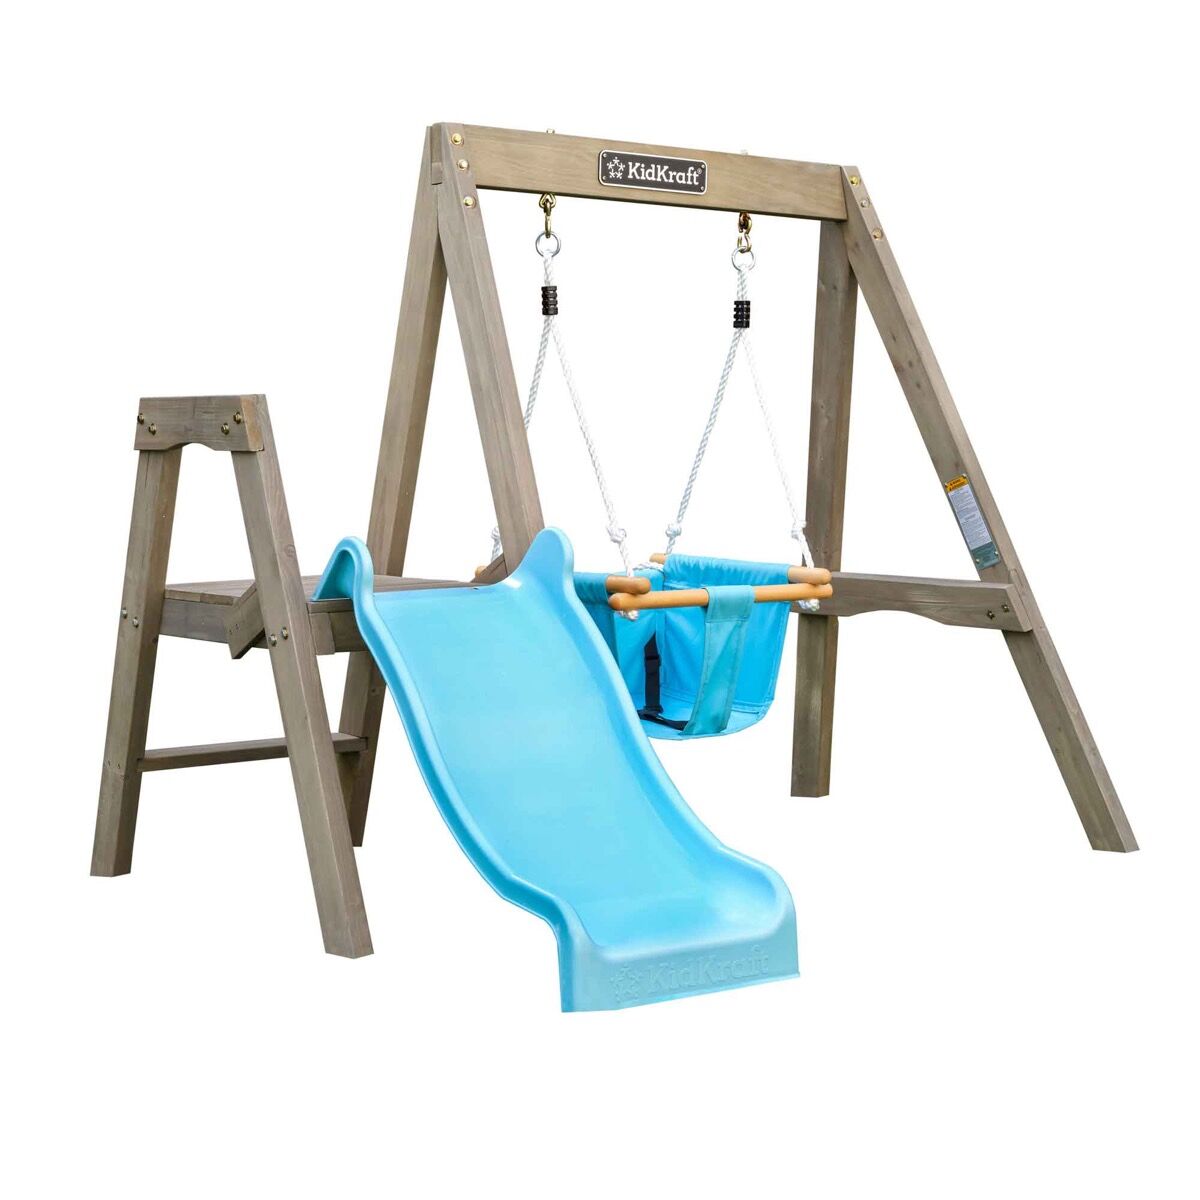 KidKraft Aire de jeux en bois pour bébé avec toboggan et balançoire Bleu 176x128x143cm